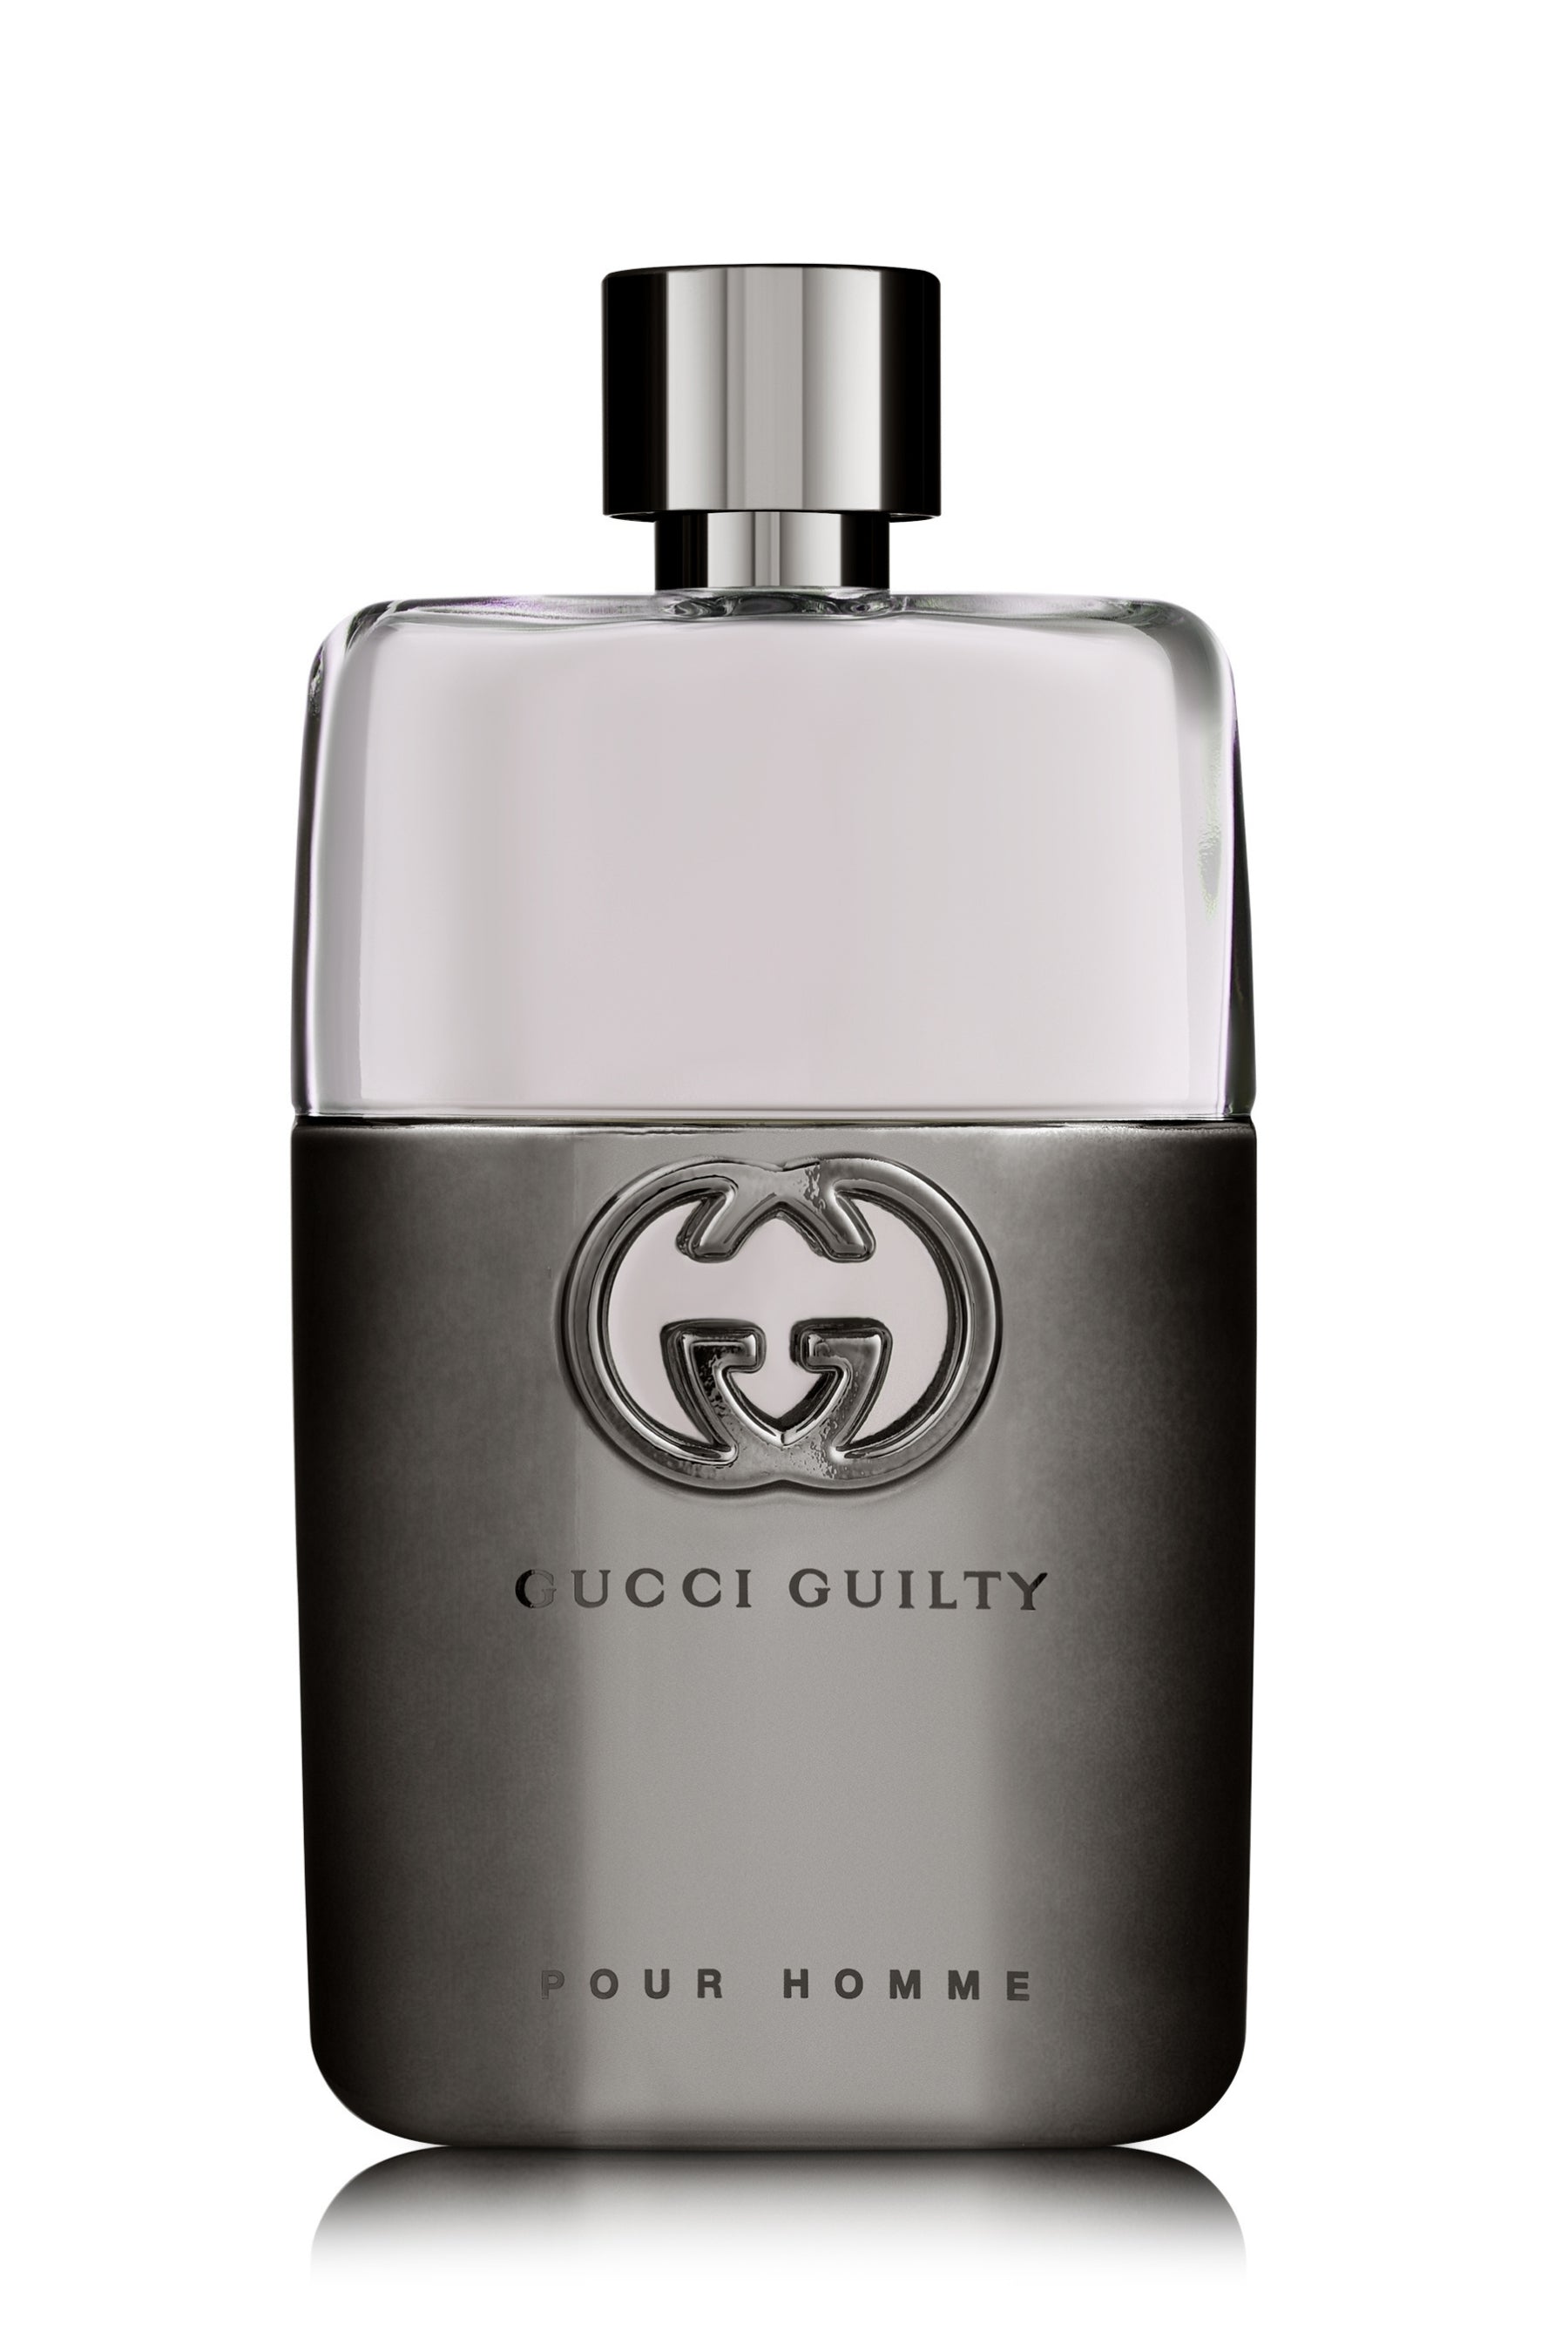 Gucci Guilty Pour Homme Eau de Parfum